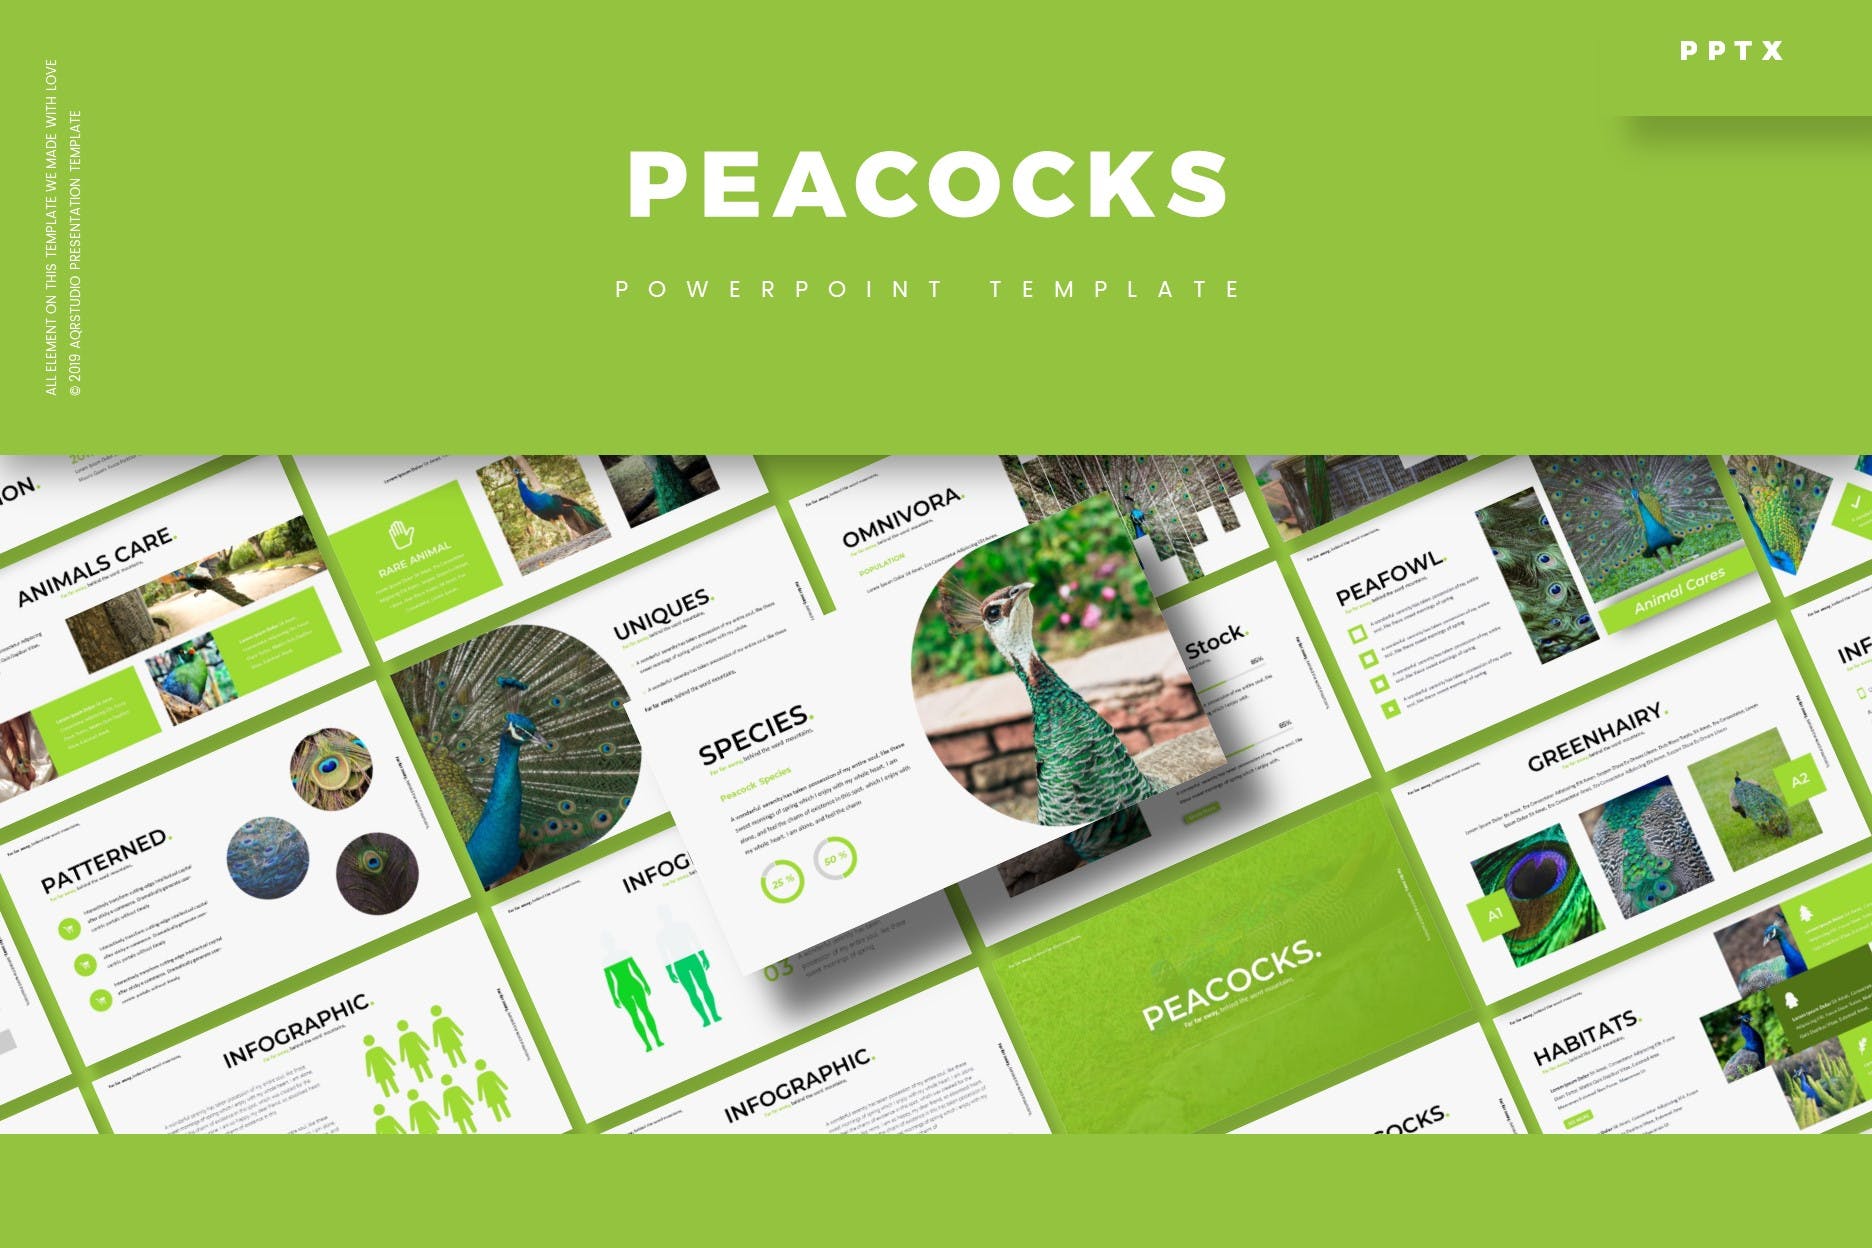 教育课件孔雀主题Powerpoint模板合集 Peacoks – Powerpoint Template设计素材模板